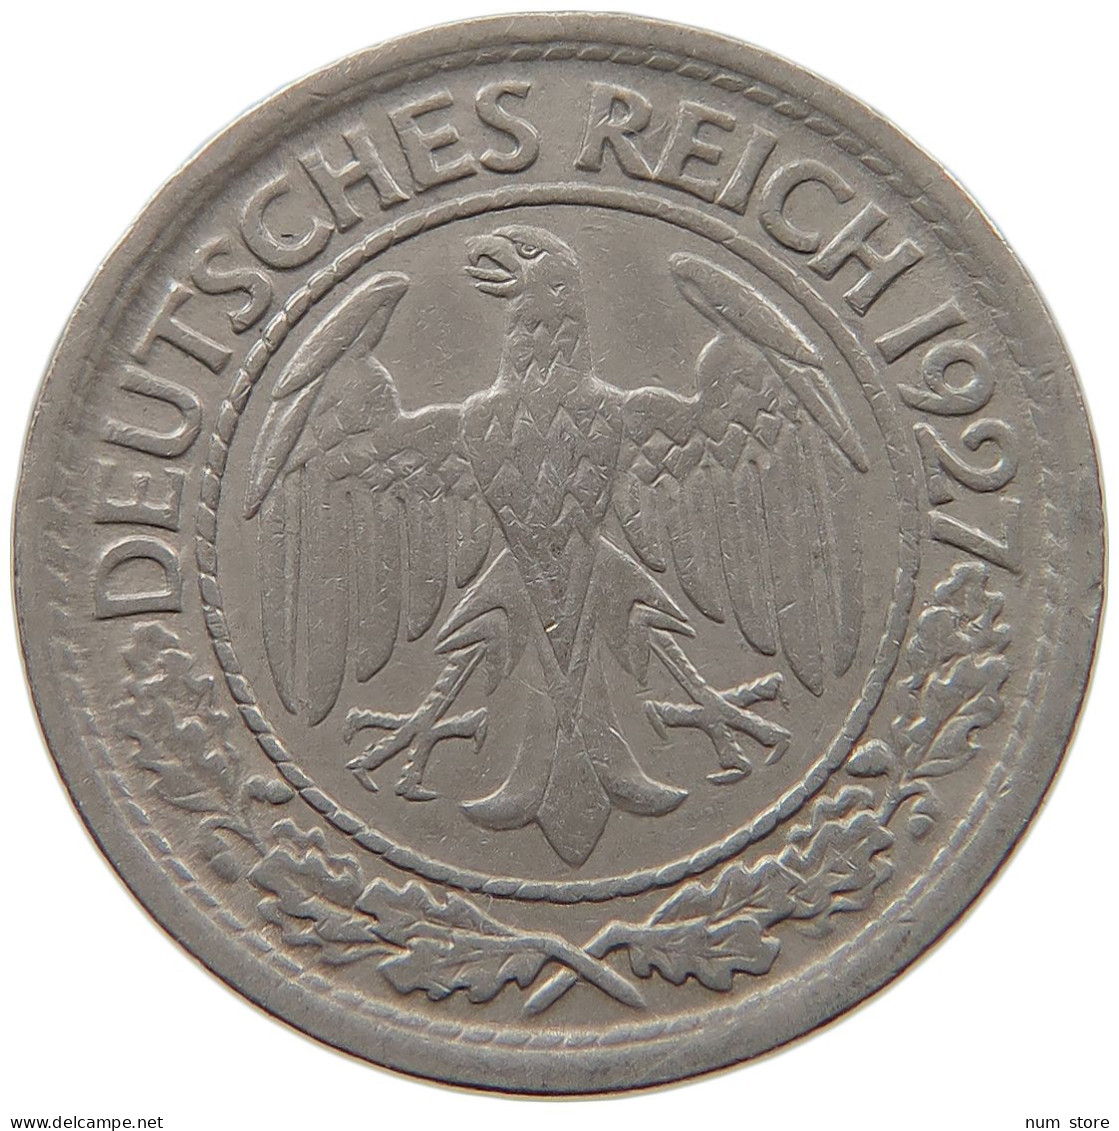 WEIMARER REPUBLIK 50 REICHSPFENNIG 1927 A  #MA 099487 - 50 Rentenpfennig & 50 Reichspfennig